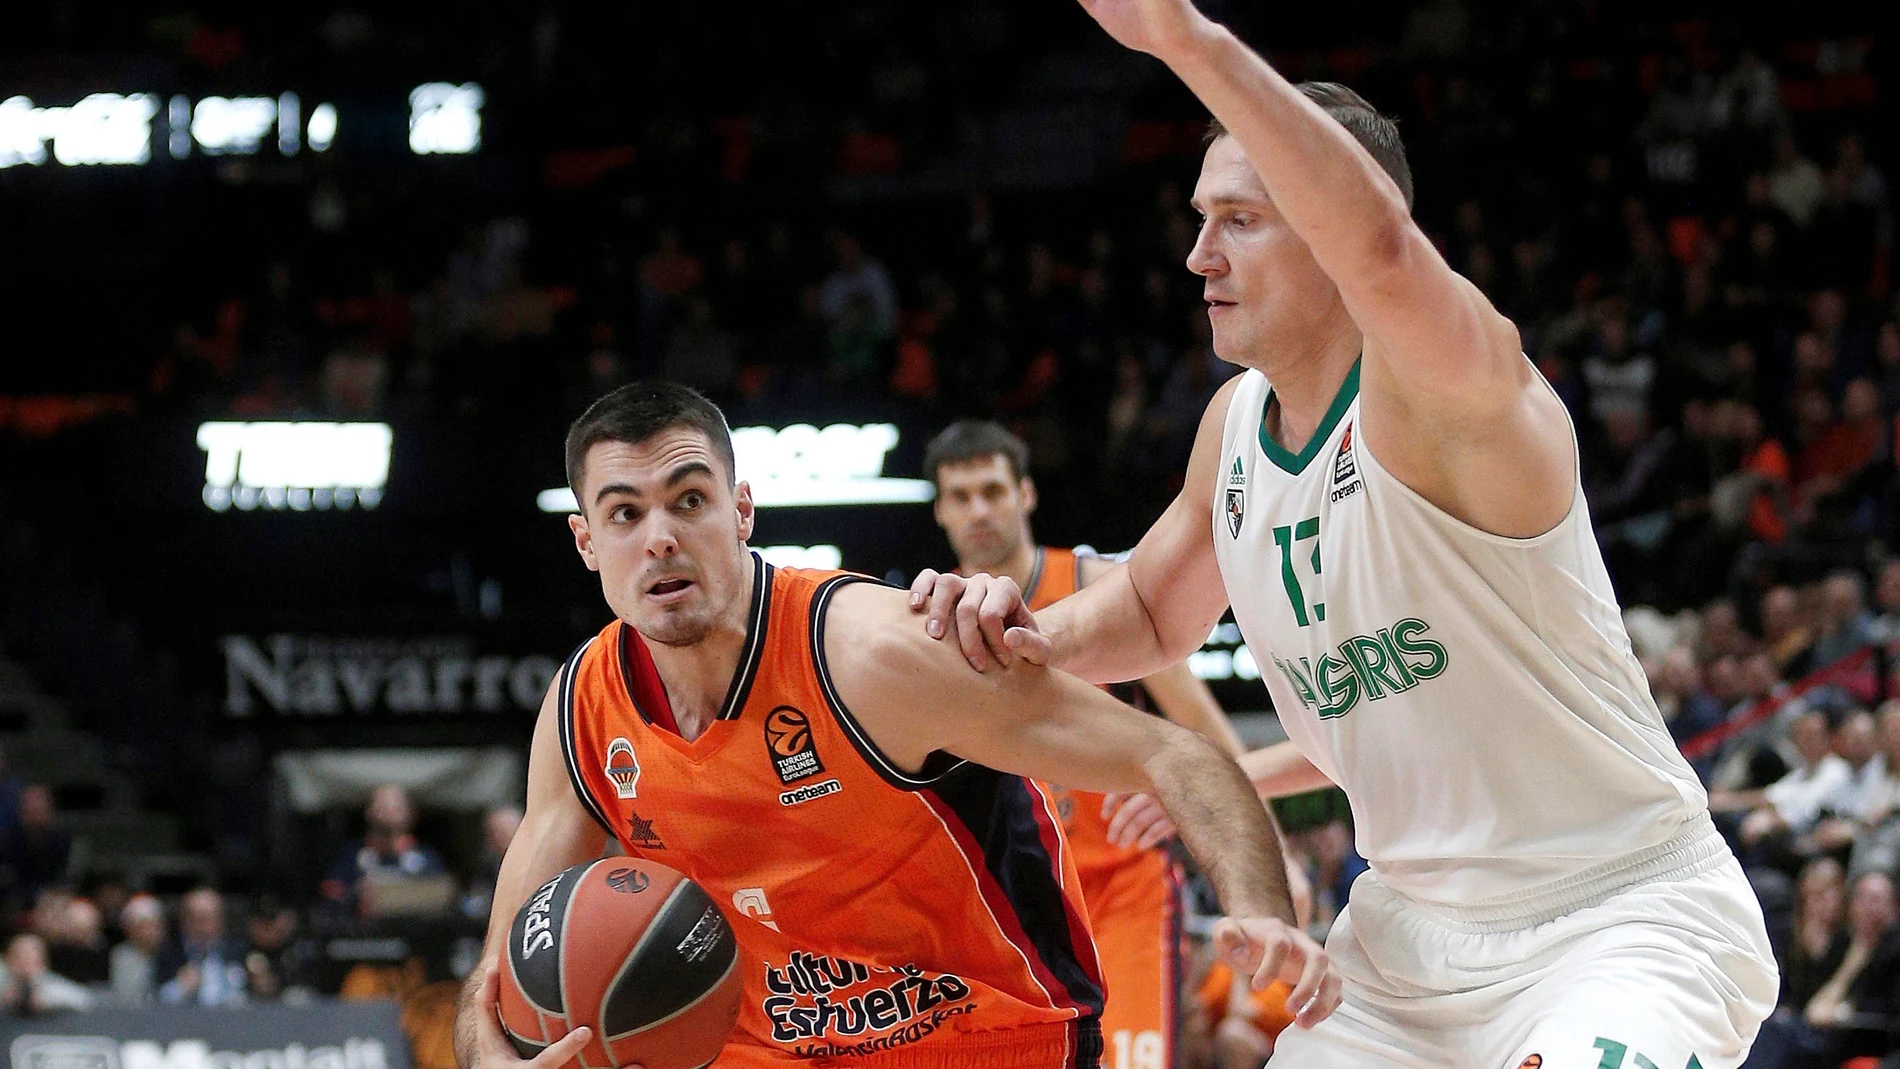 Abalde intenta superar la defensa de Jankunas en el partido de Valencia Basket